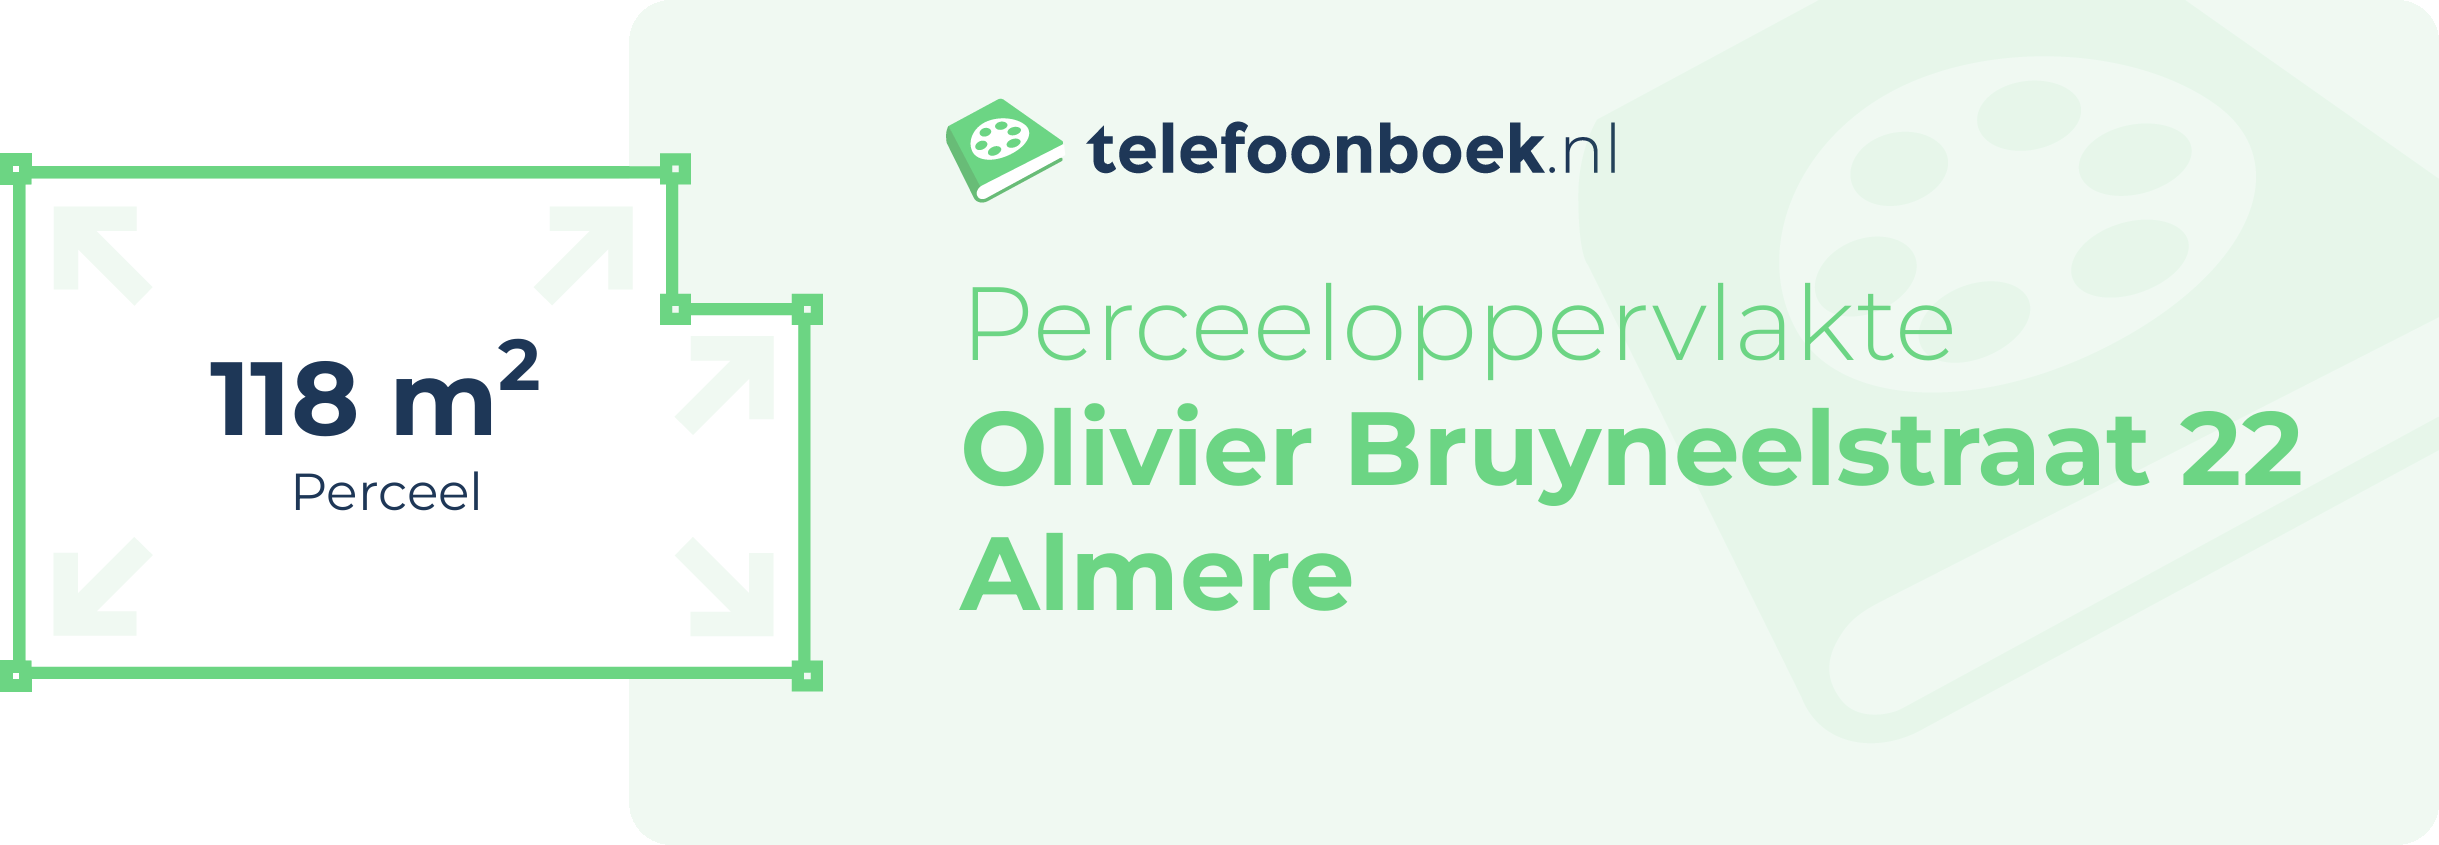 Perceeloppervlakte Olivier Bruyneelstraat 22 Almere